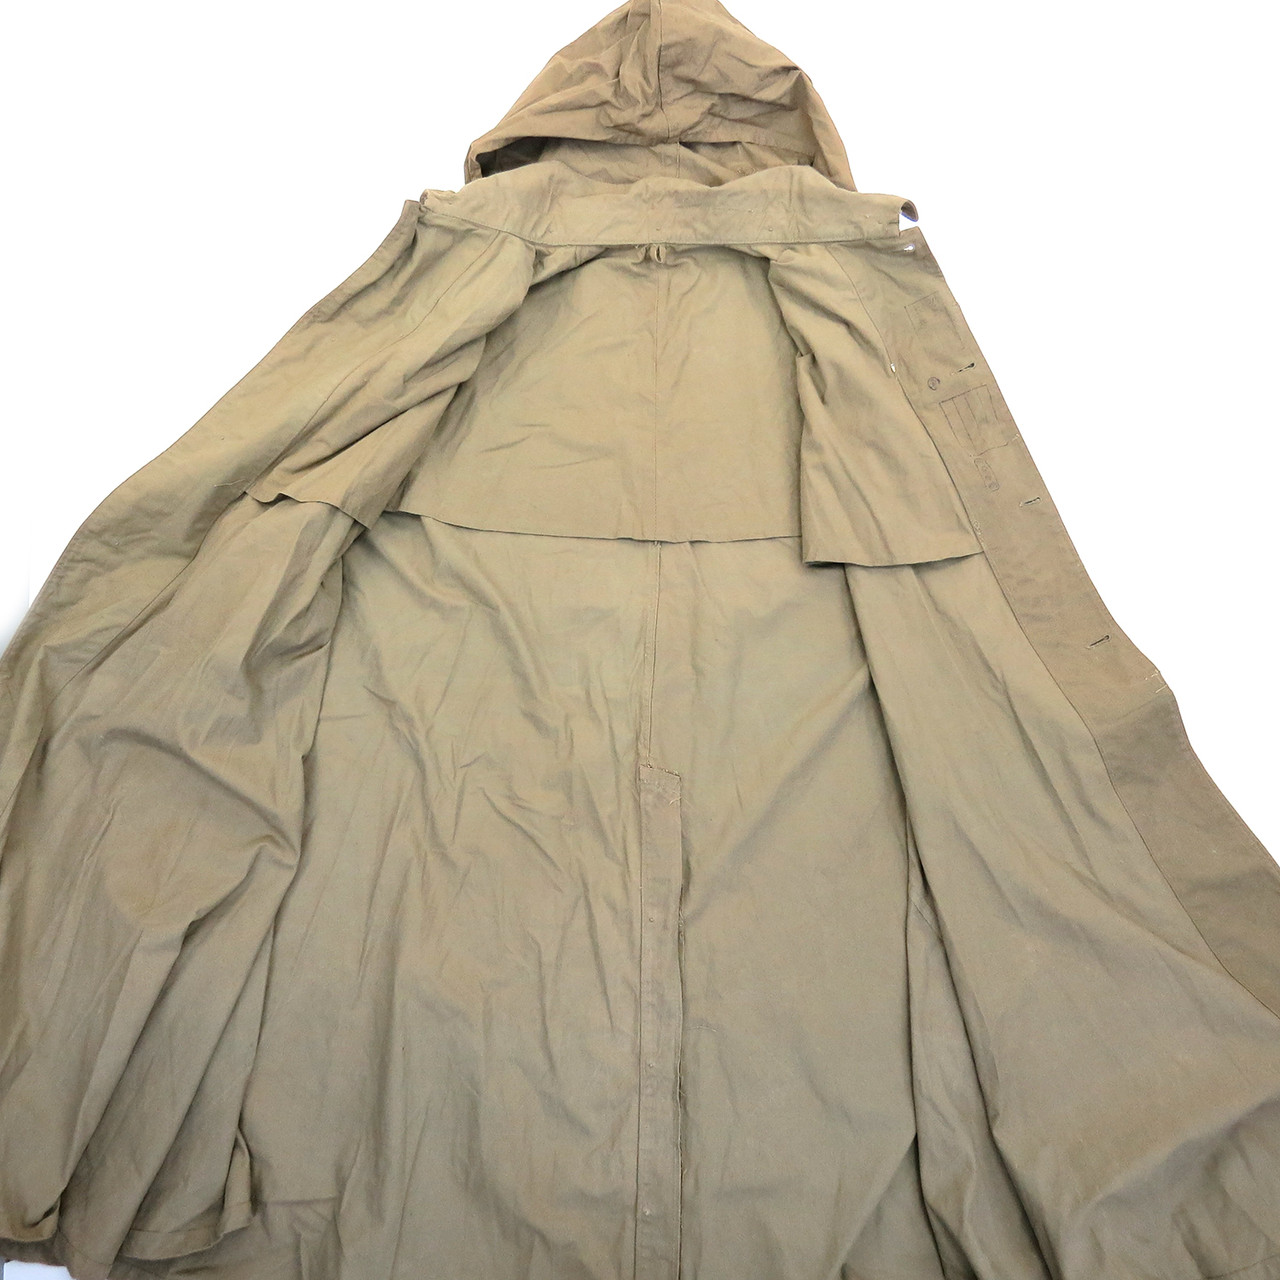 Japanese Army Rain Cloak